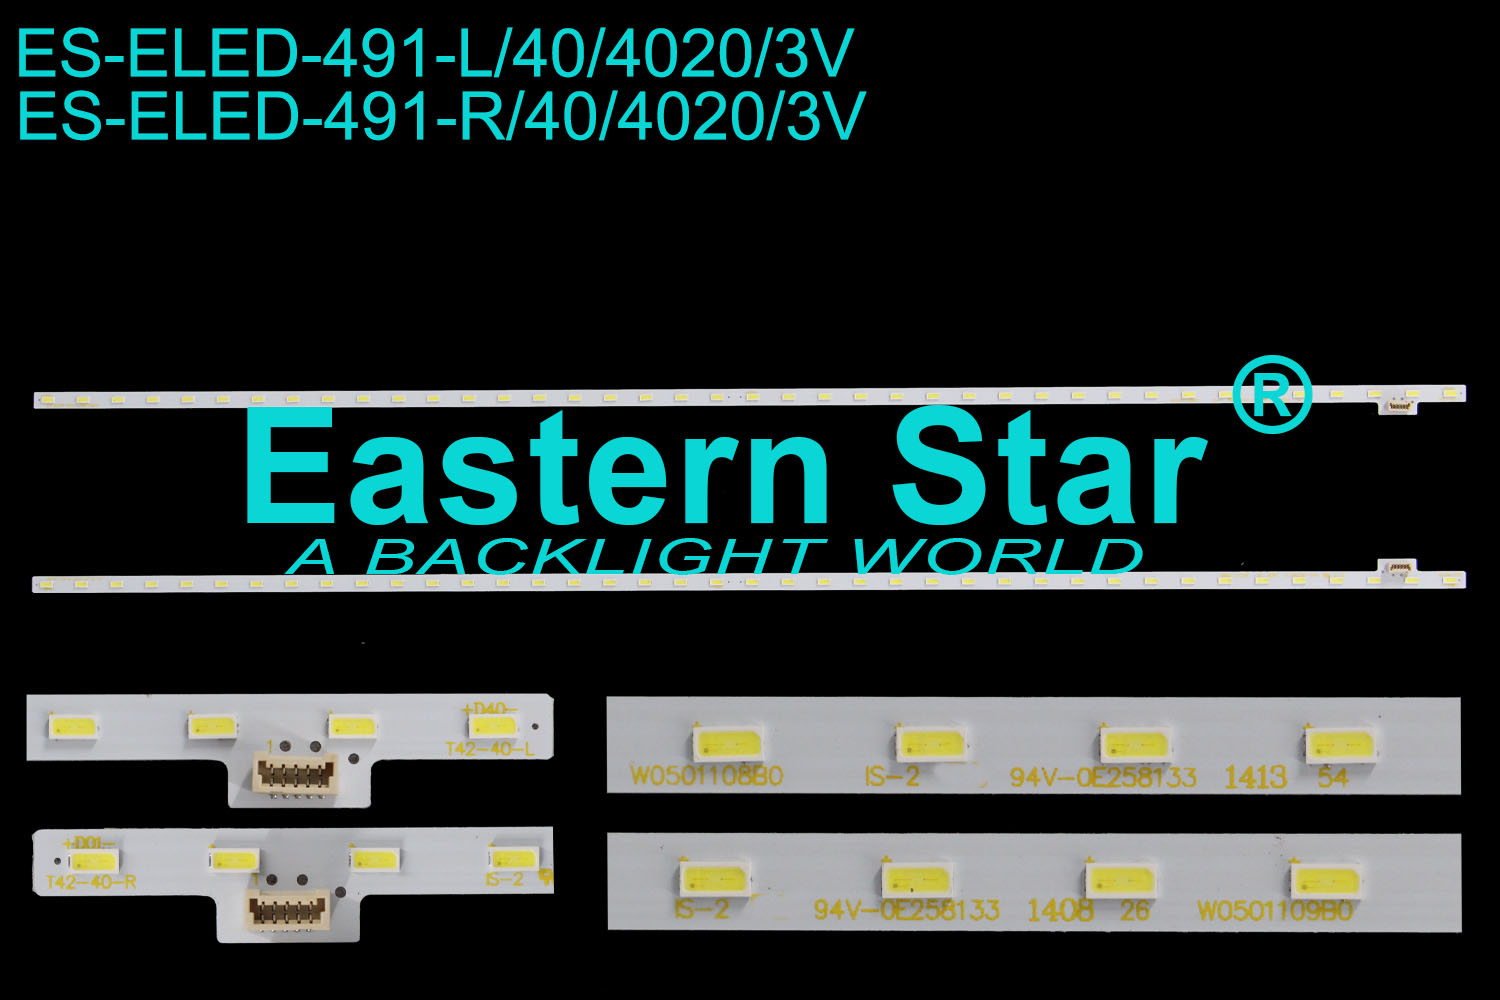 ES-ELED-491 ELED/EDGE TV backlight use for 42'' Sony 42w670 L:T42-40-L  W0501108B0  R:T42-40-R  W0501109B0 LED STRIPS(2）